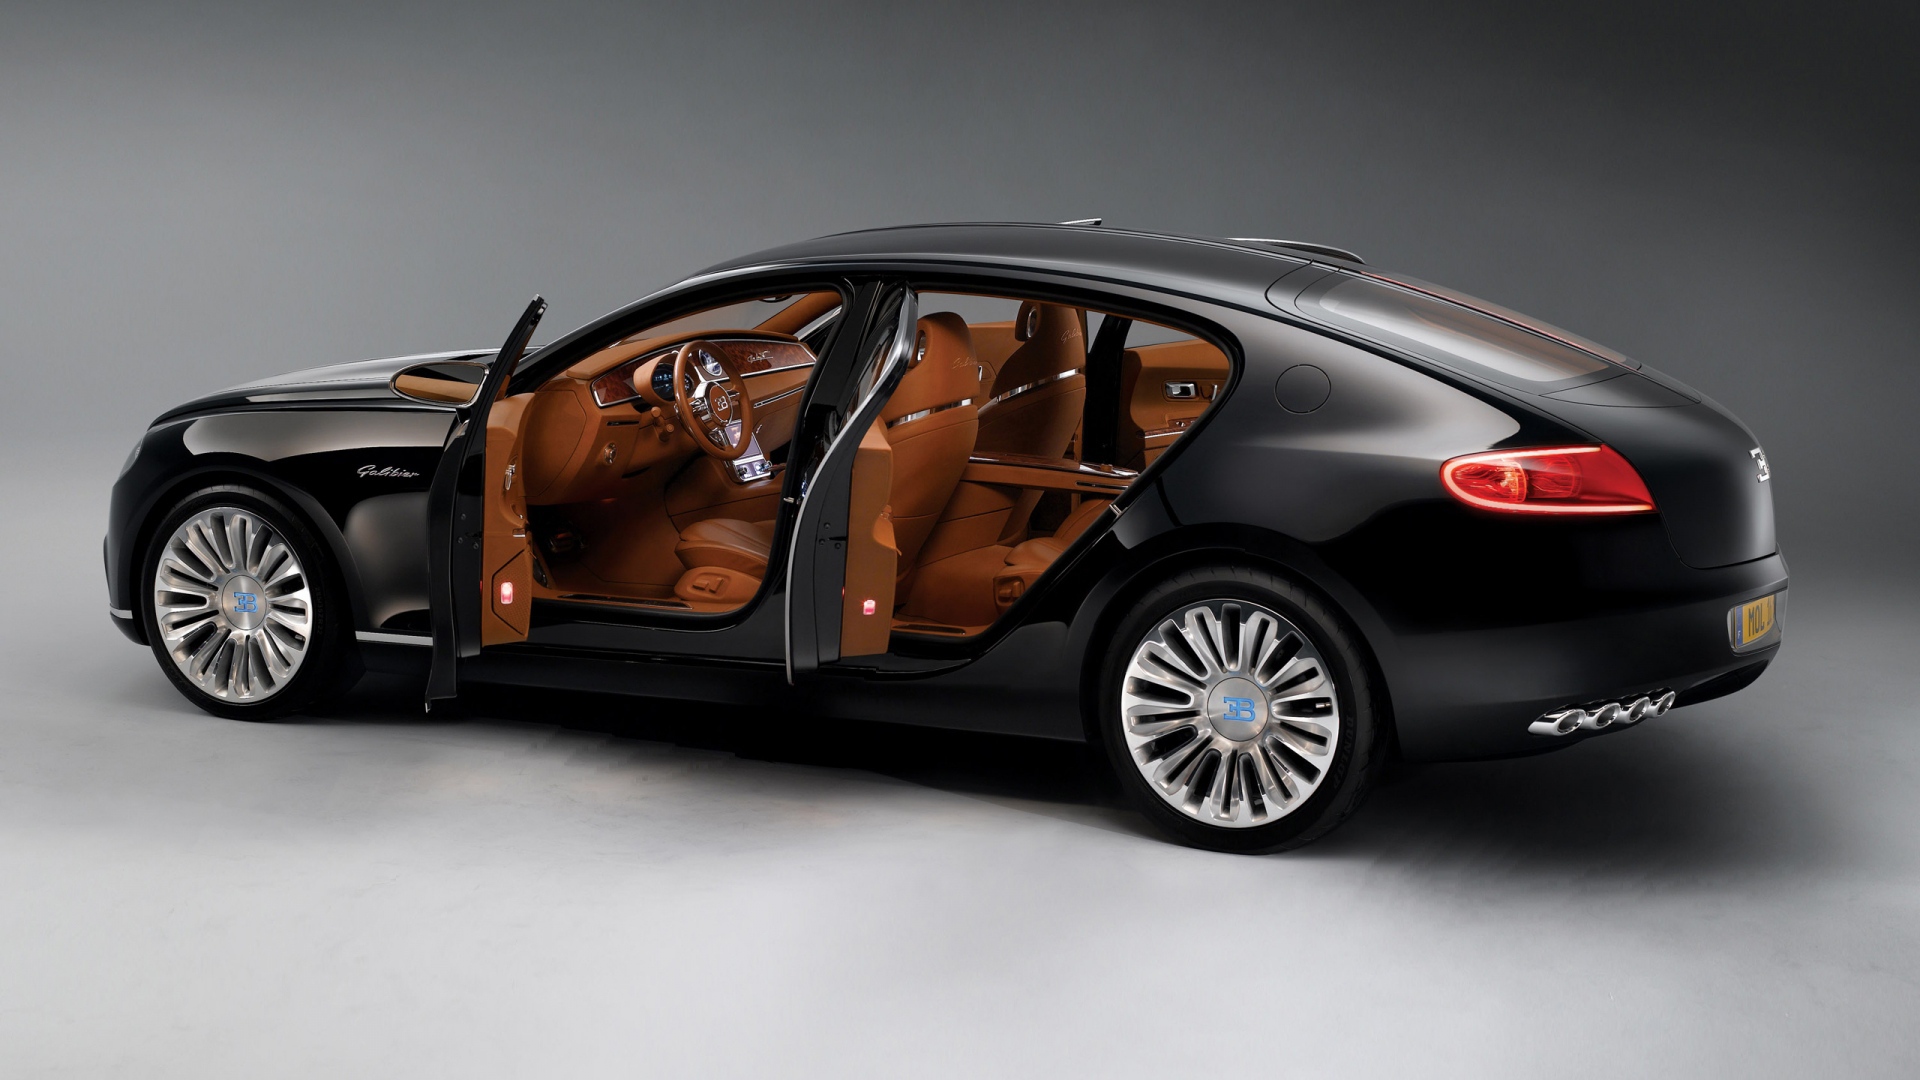 Черный автомобиль Bugatti 16C Galibier с коричневым салоном